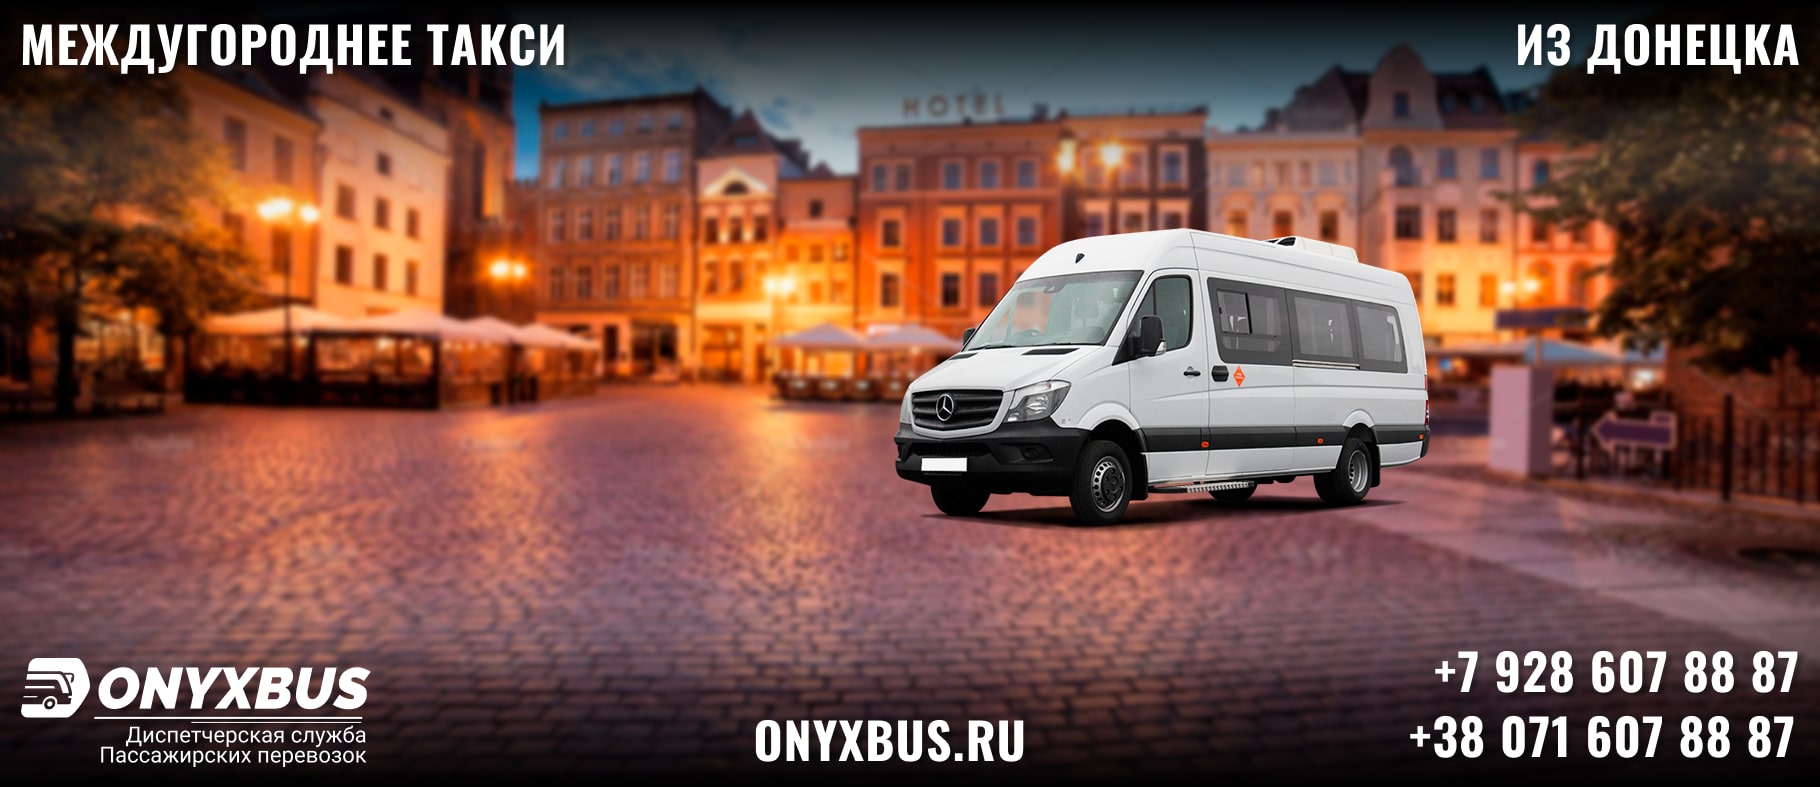 Заказ <br>Микроавтобуса Самара - Донецк